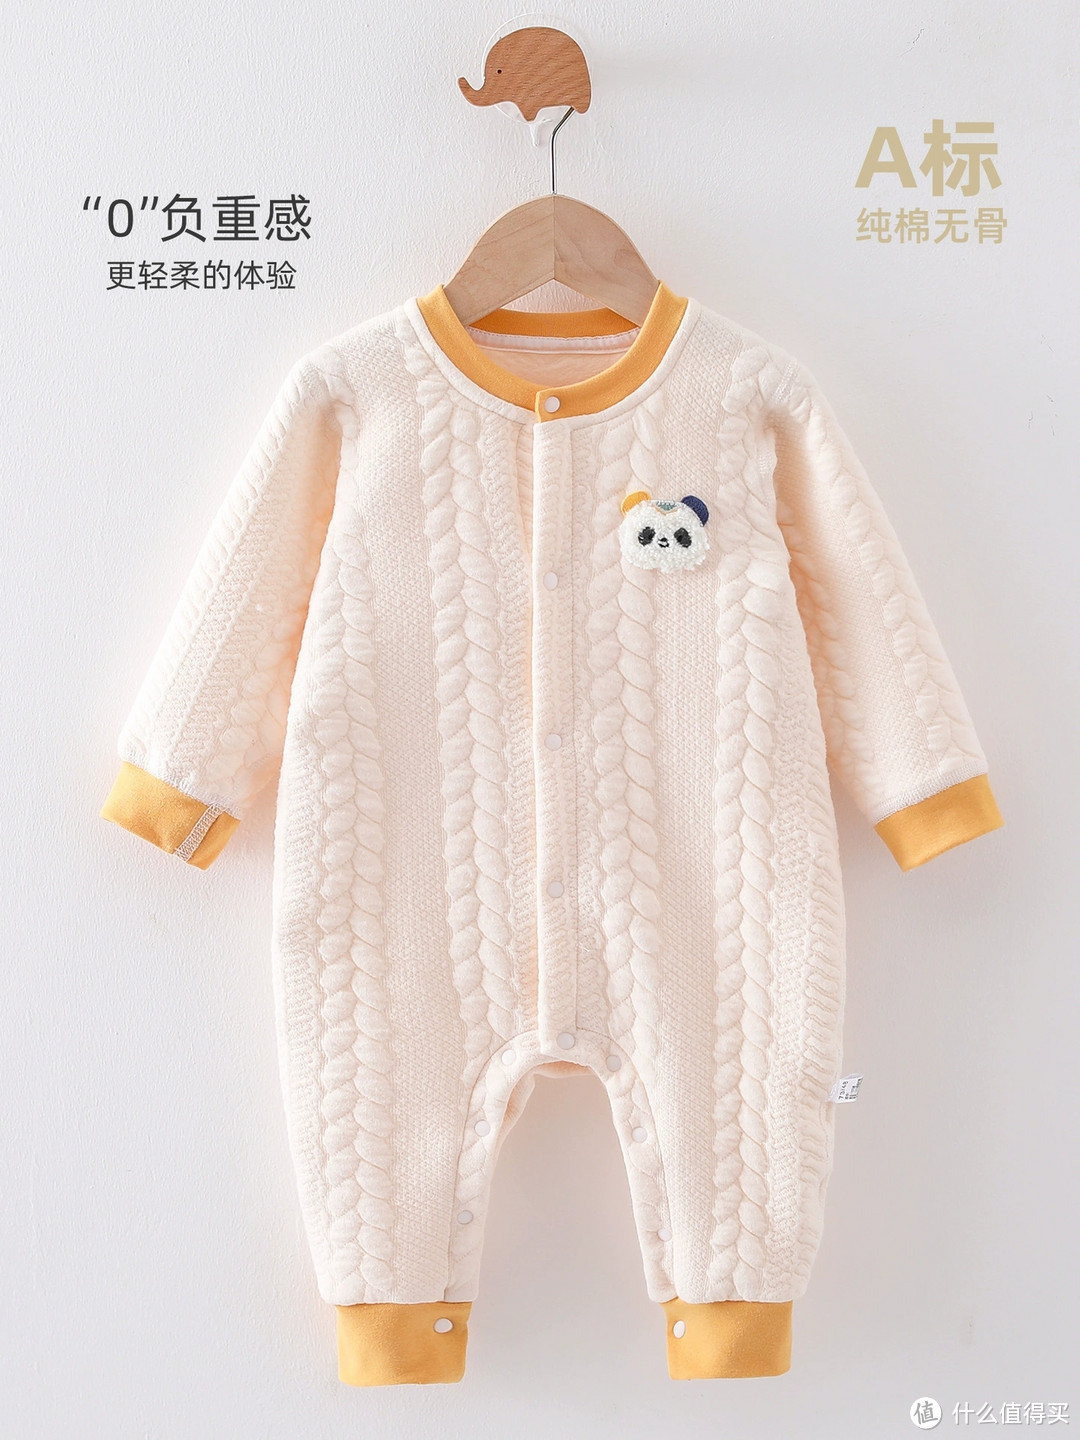 宝宝冬衣选购技巧分享：如何选择保暖又舒适的衣物